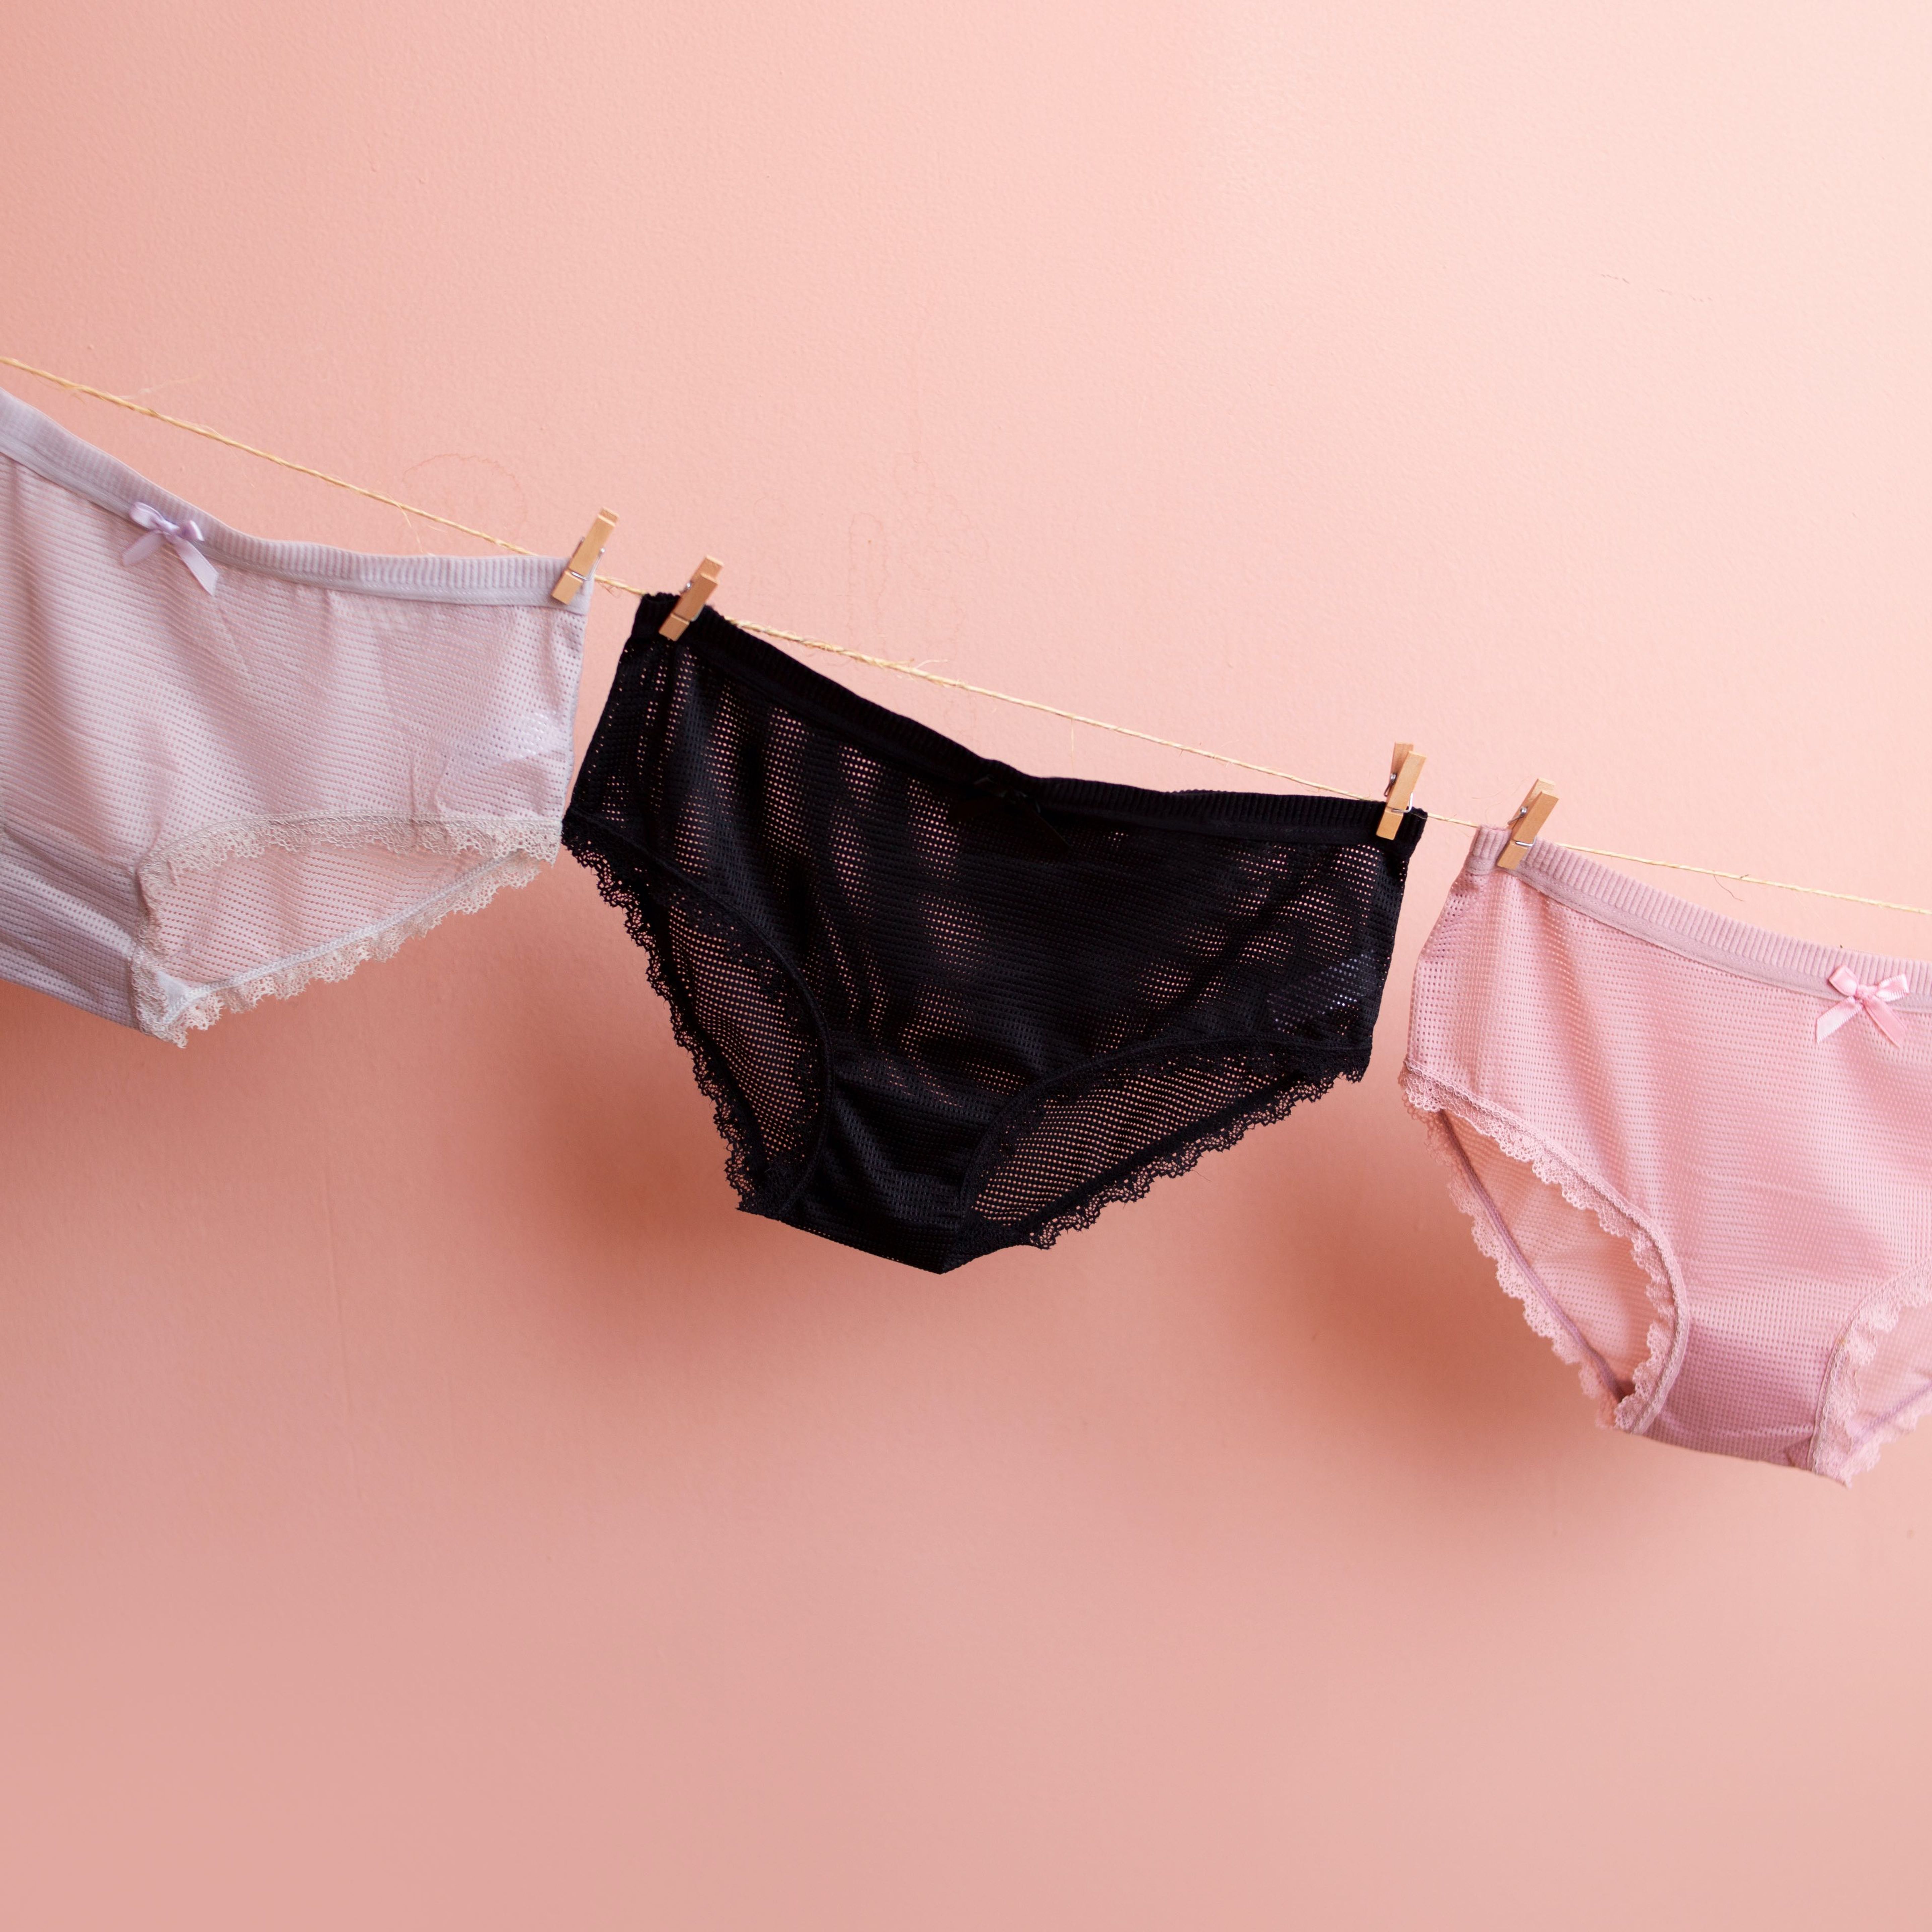 Entretien des sous-vêtements : comment laver la lingerie ?